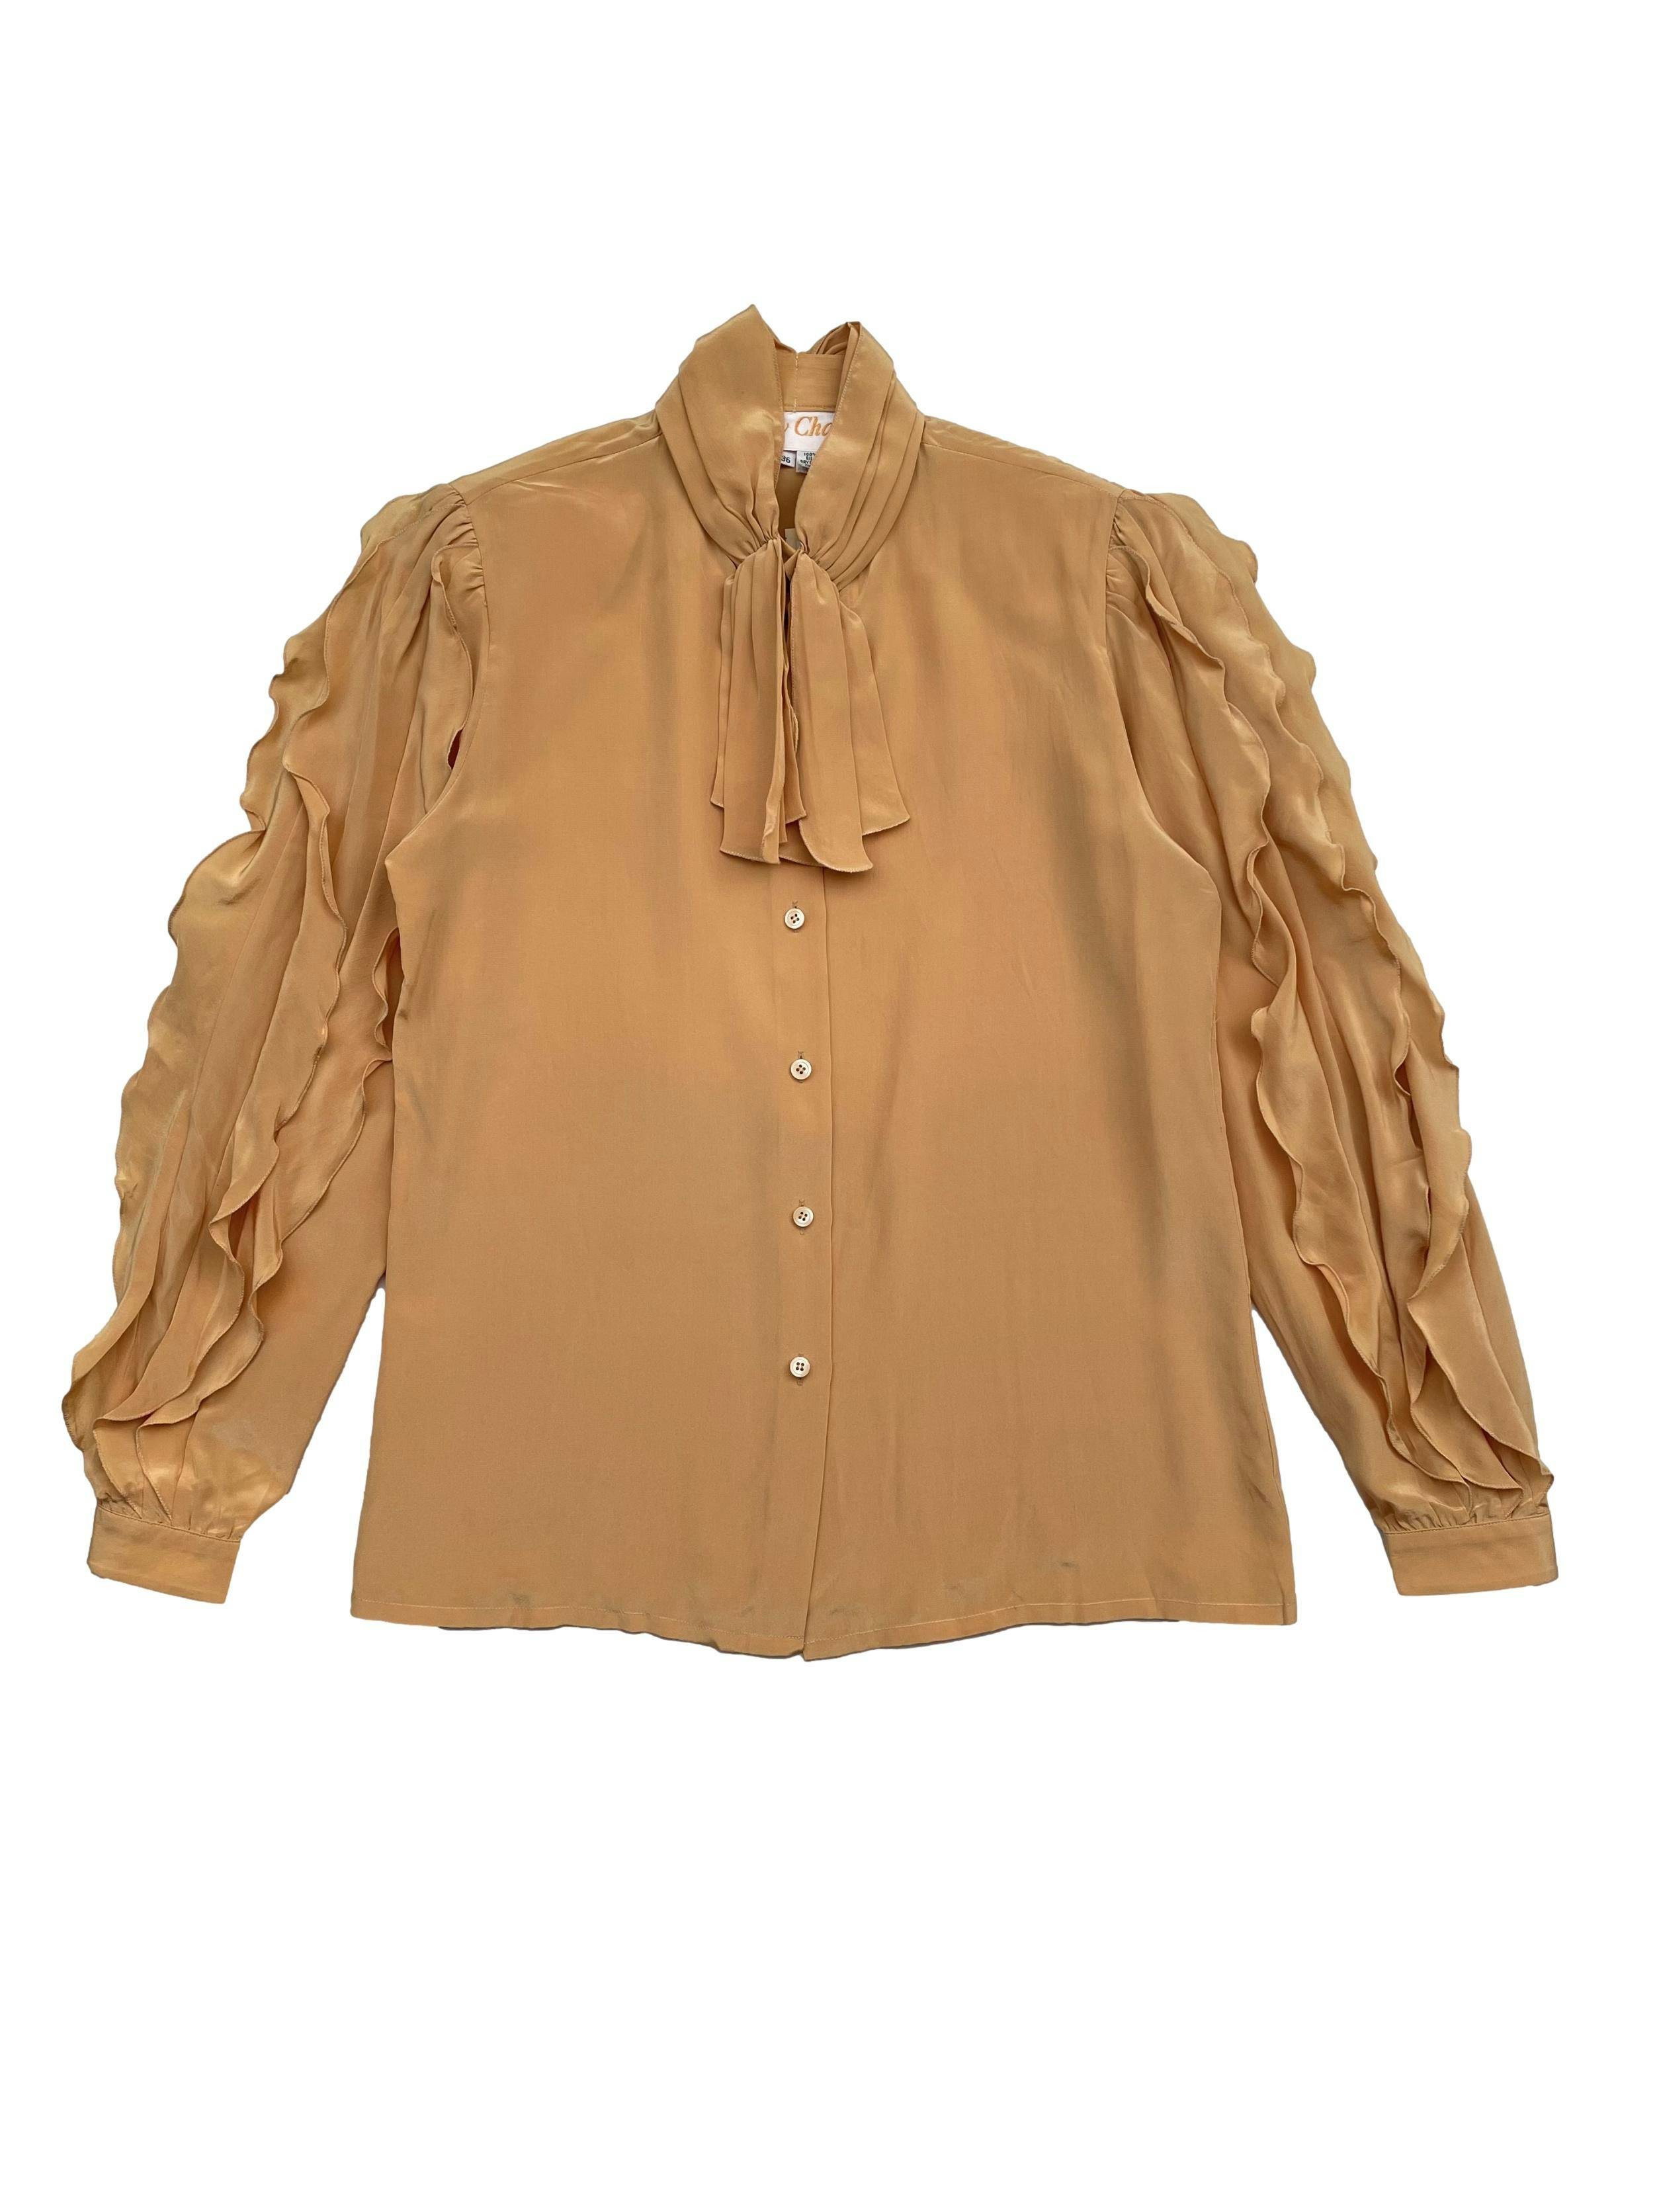 Blusa vintage 100% seda en color maíz, cuello drapeado con lazo, mangas con volantes y hombreras. Hombros 35 cm, Largo 60cm.